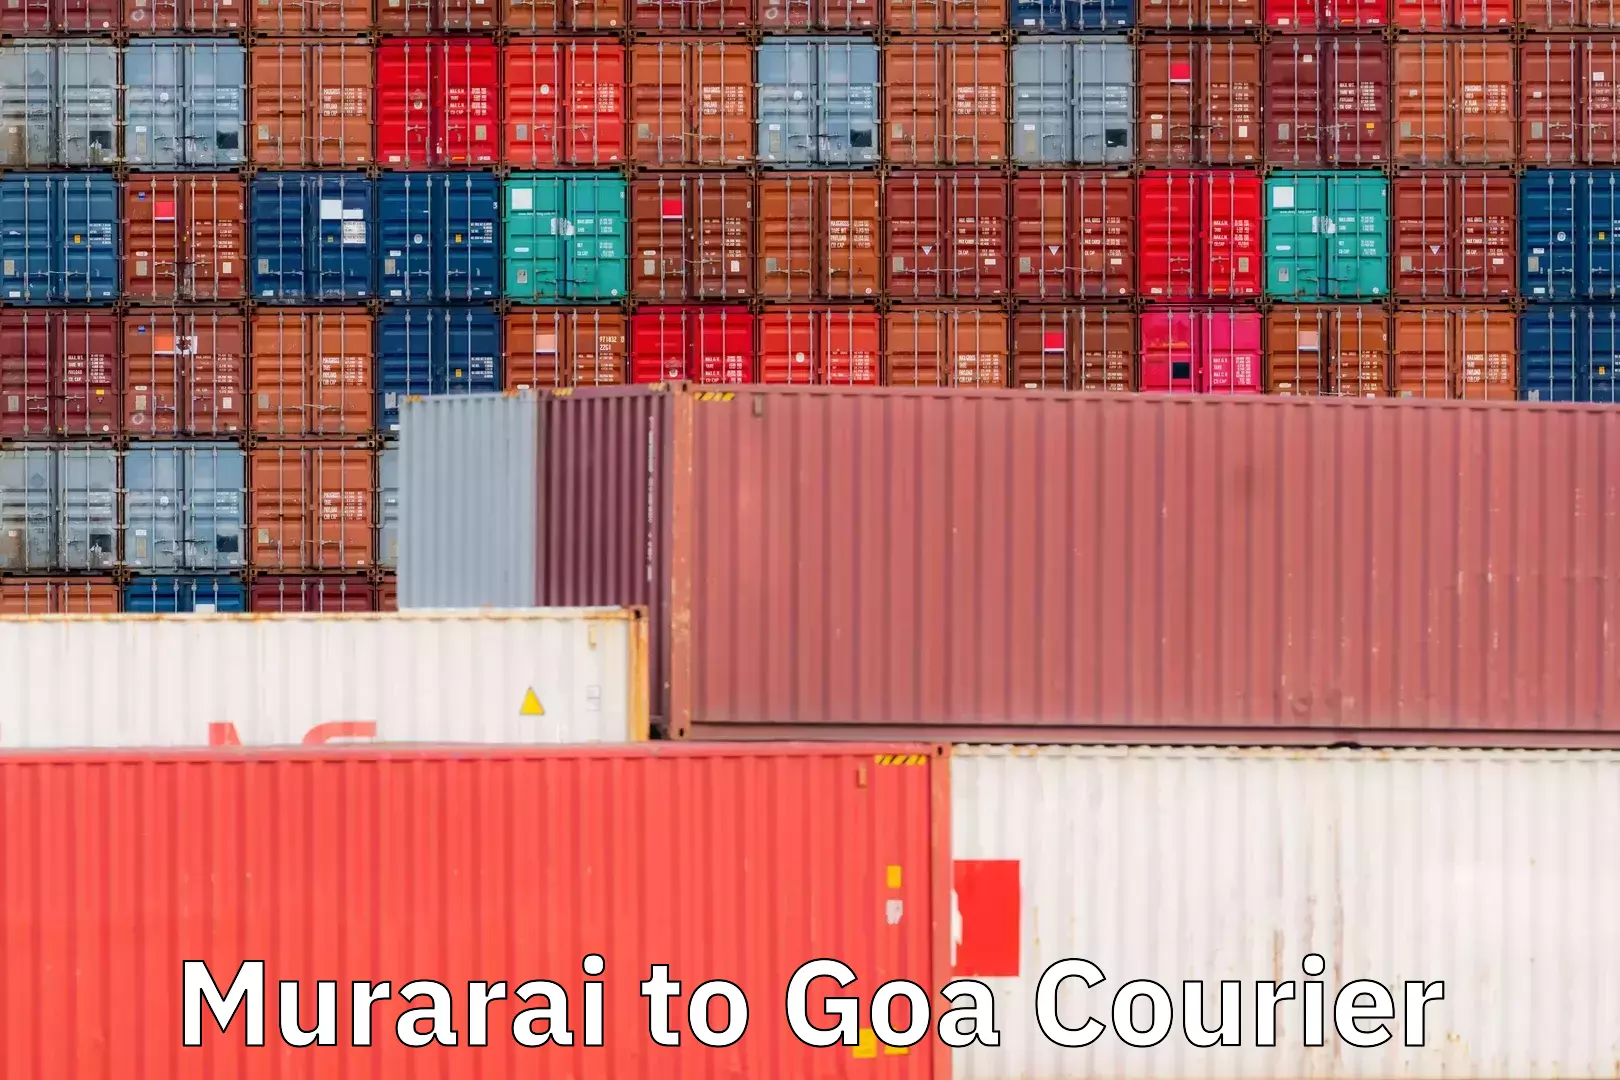 Efficient order fulfillment Murarai to Goa